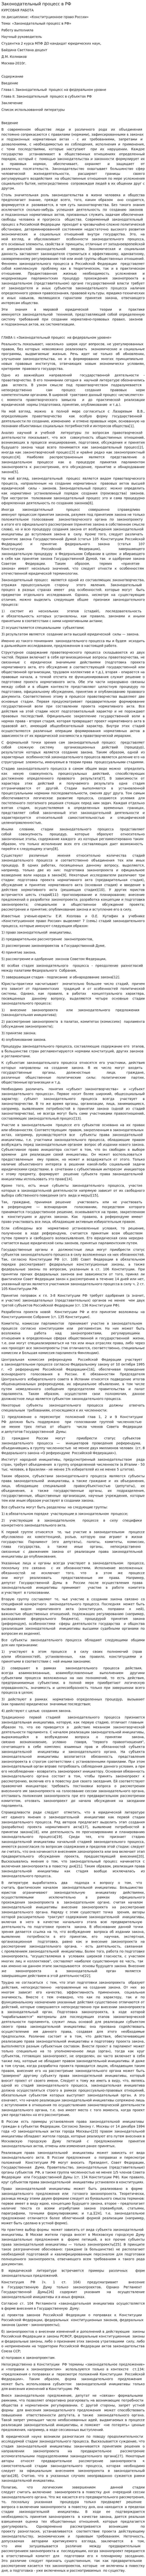 Законодательный процесс в РФ. 13